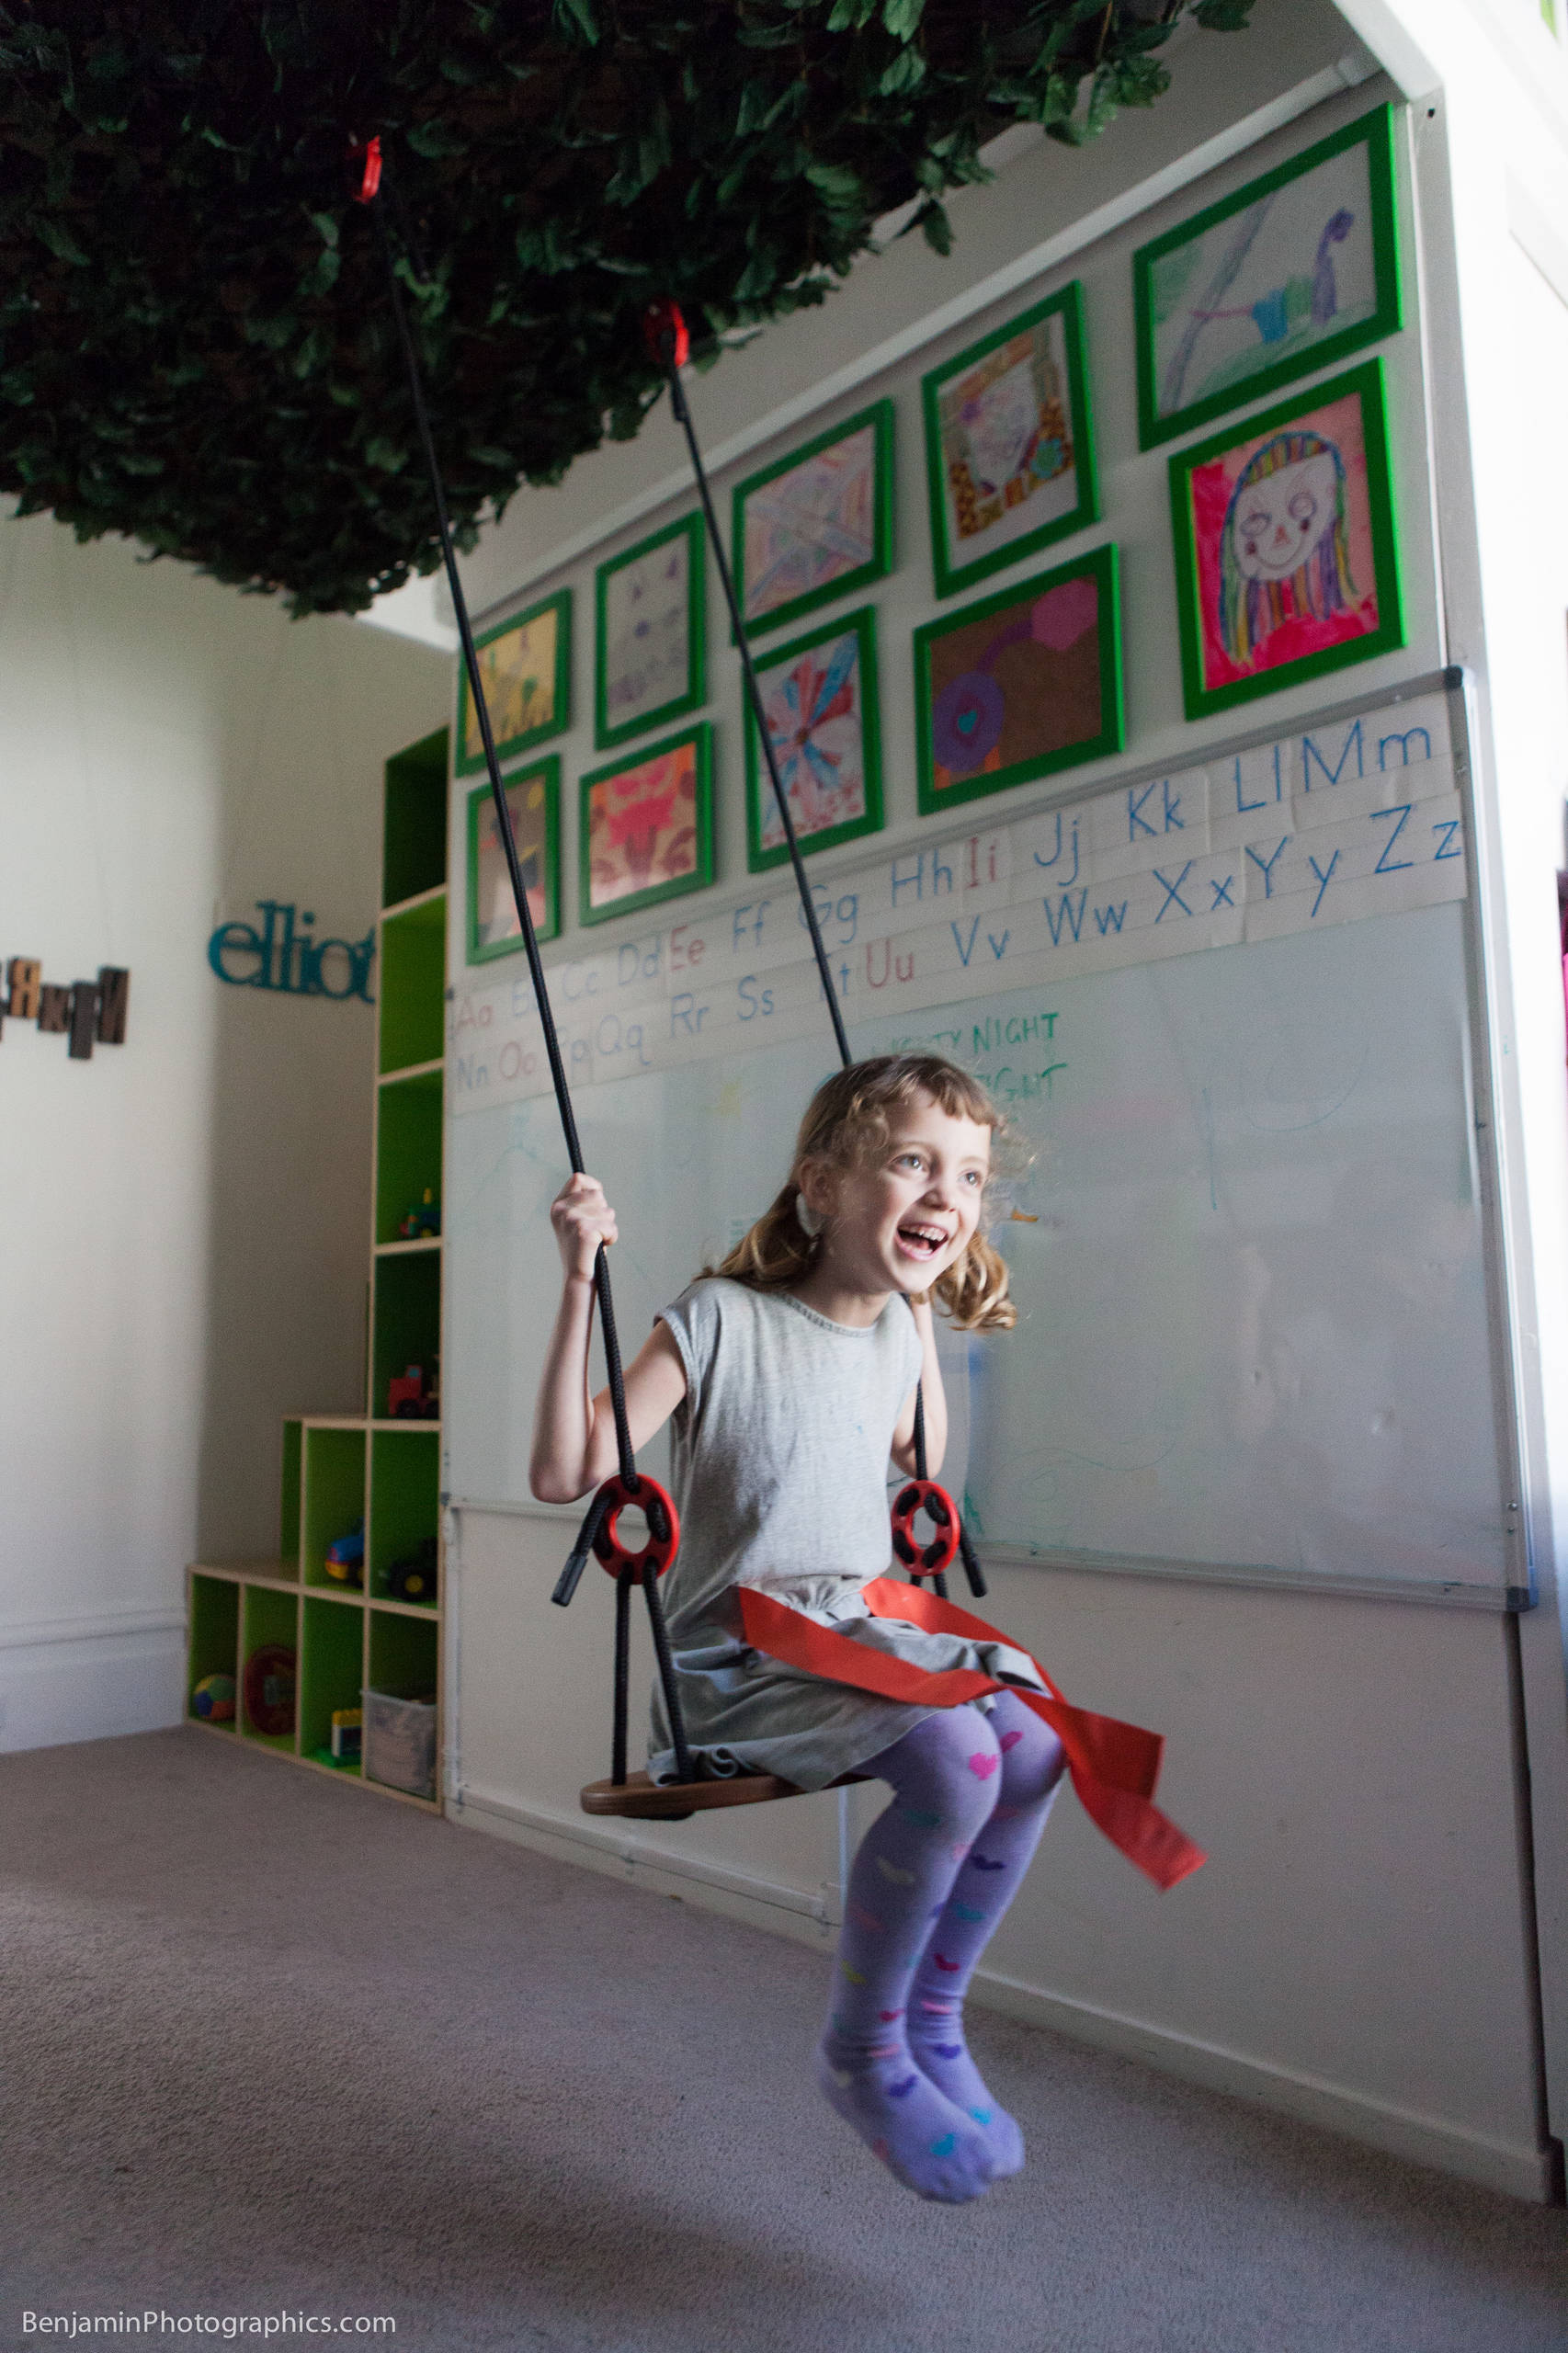 9 Ideen für Schaukeln im Kinderzimmer – einmal anschubsen bitte!